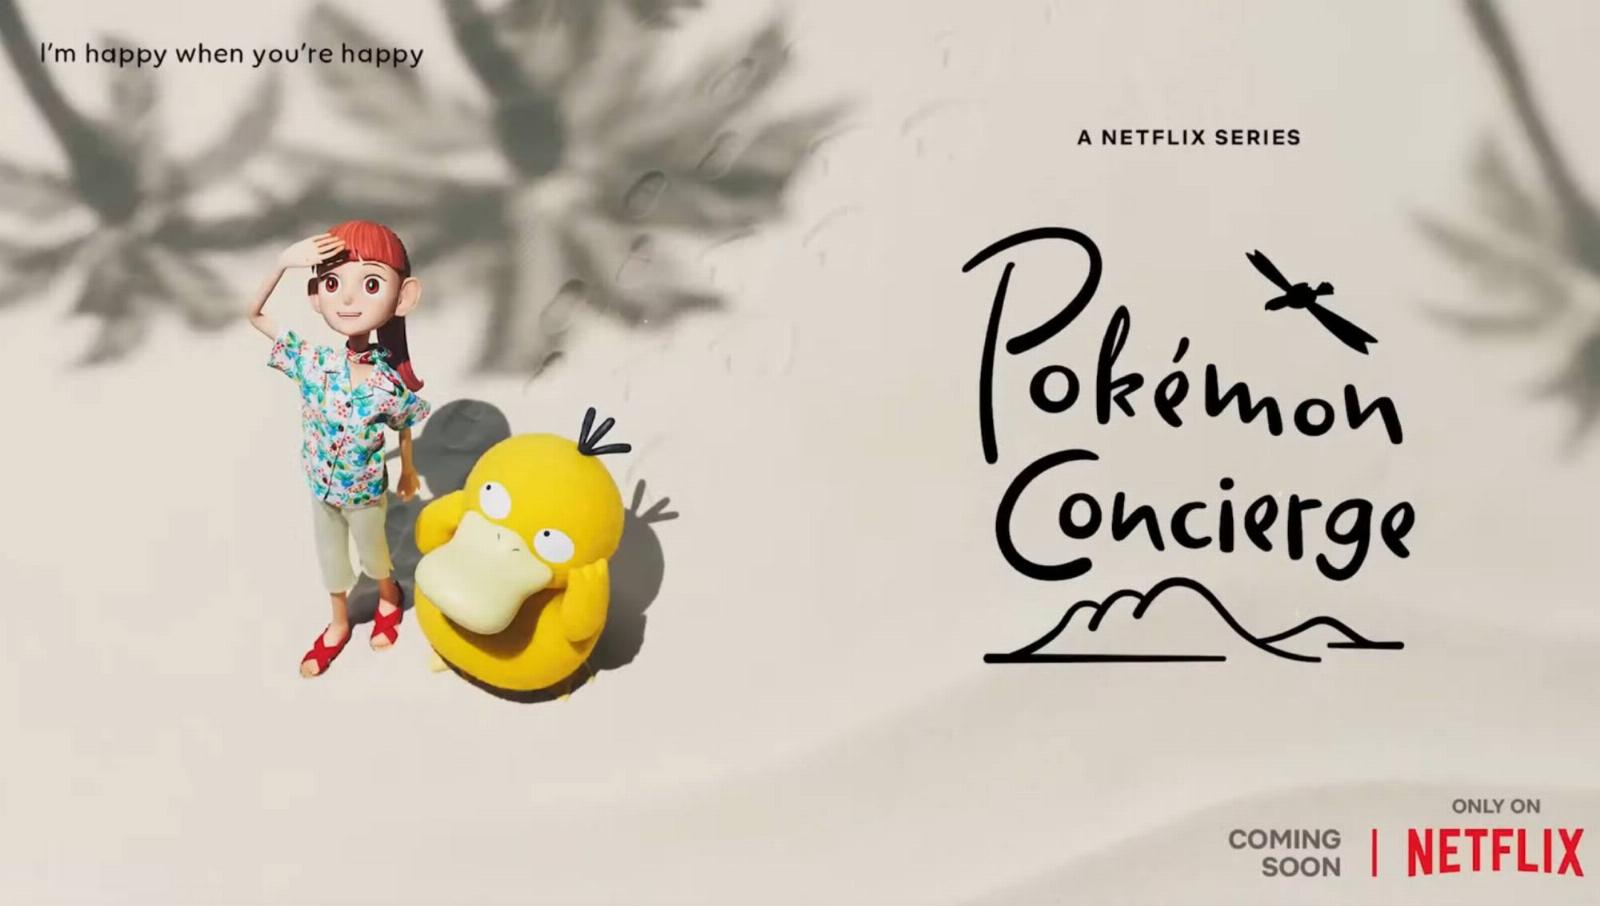 Pokémon partners with Netflix to launch stop-motion series ‘Pokémon Concierge’